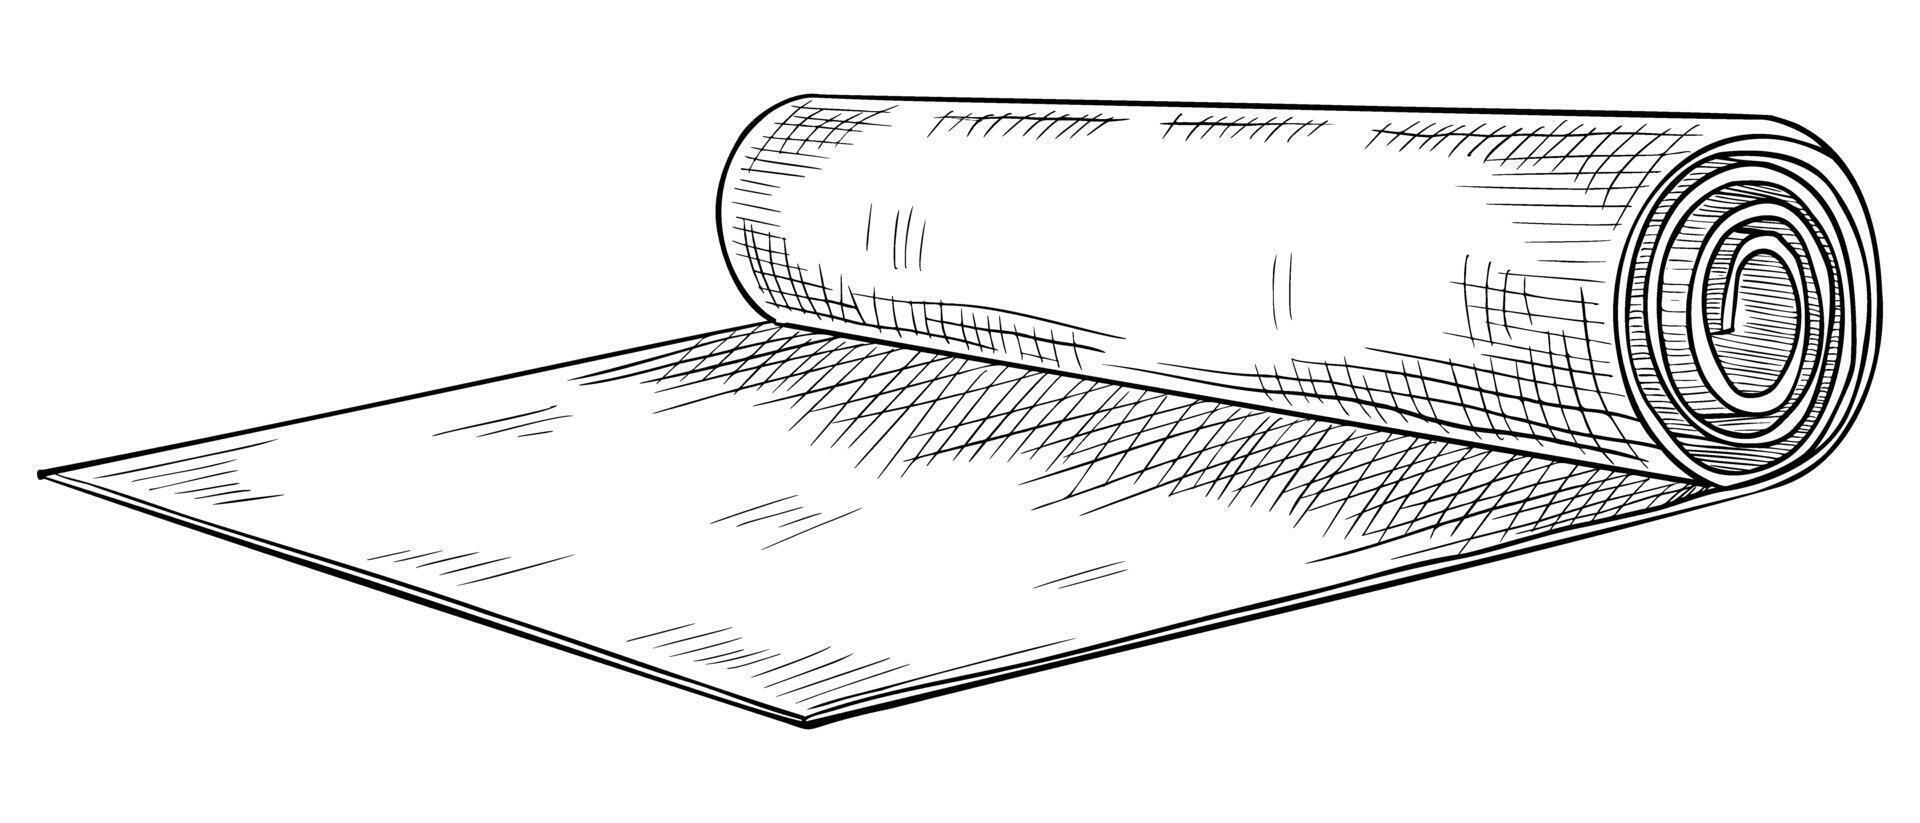 yoga och kondition matta. illustration av övning Utrustning på isolerat bakgrund. linjär teckning av en vaddera för pilates Träning målad förbi svart bläck. gravyr av Gym och meditation verktyg vektor